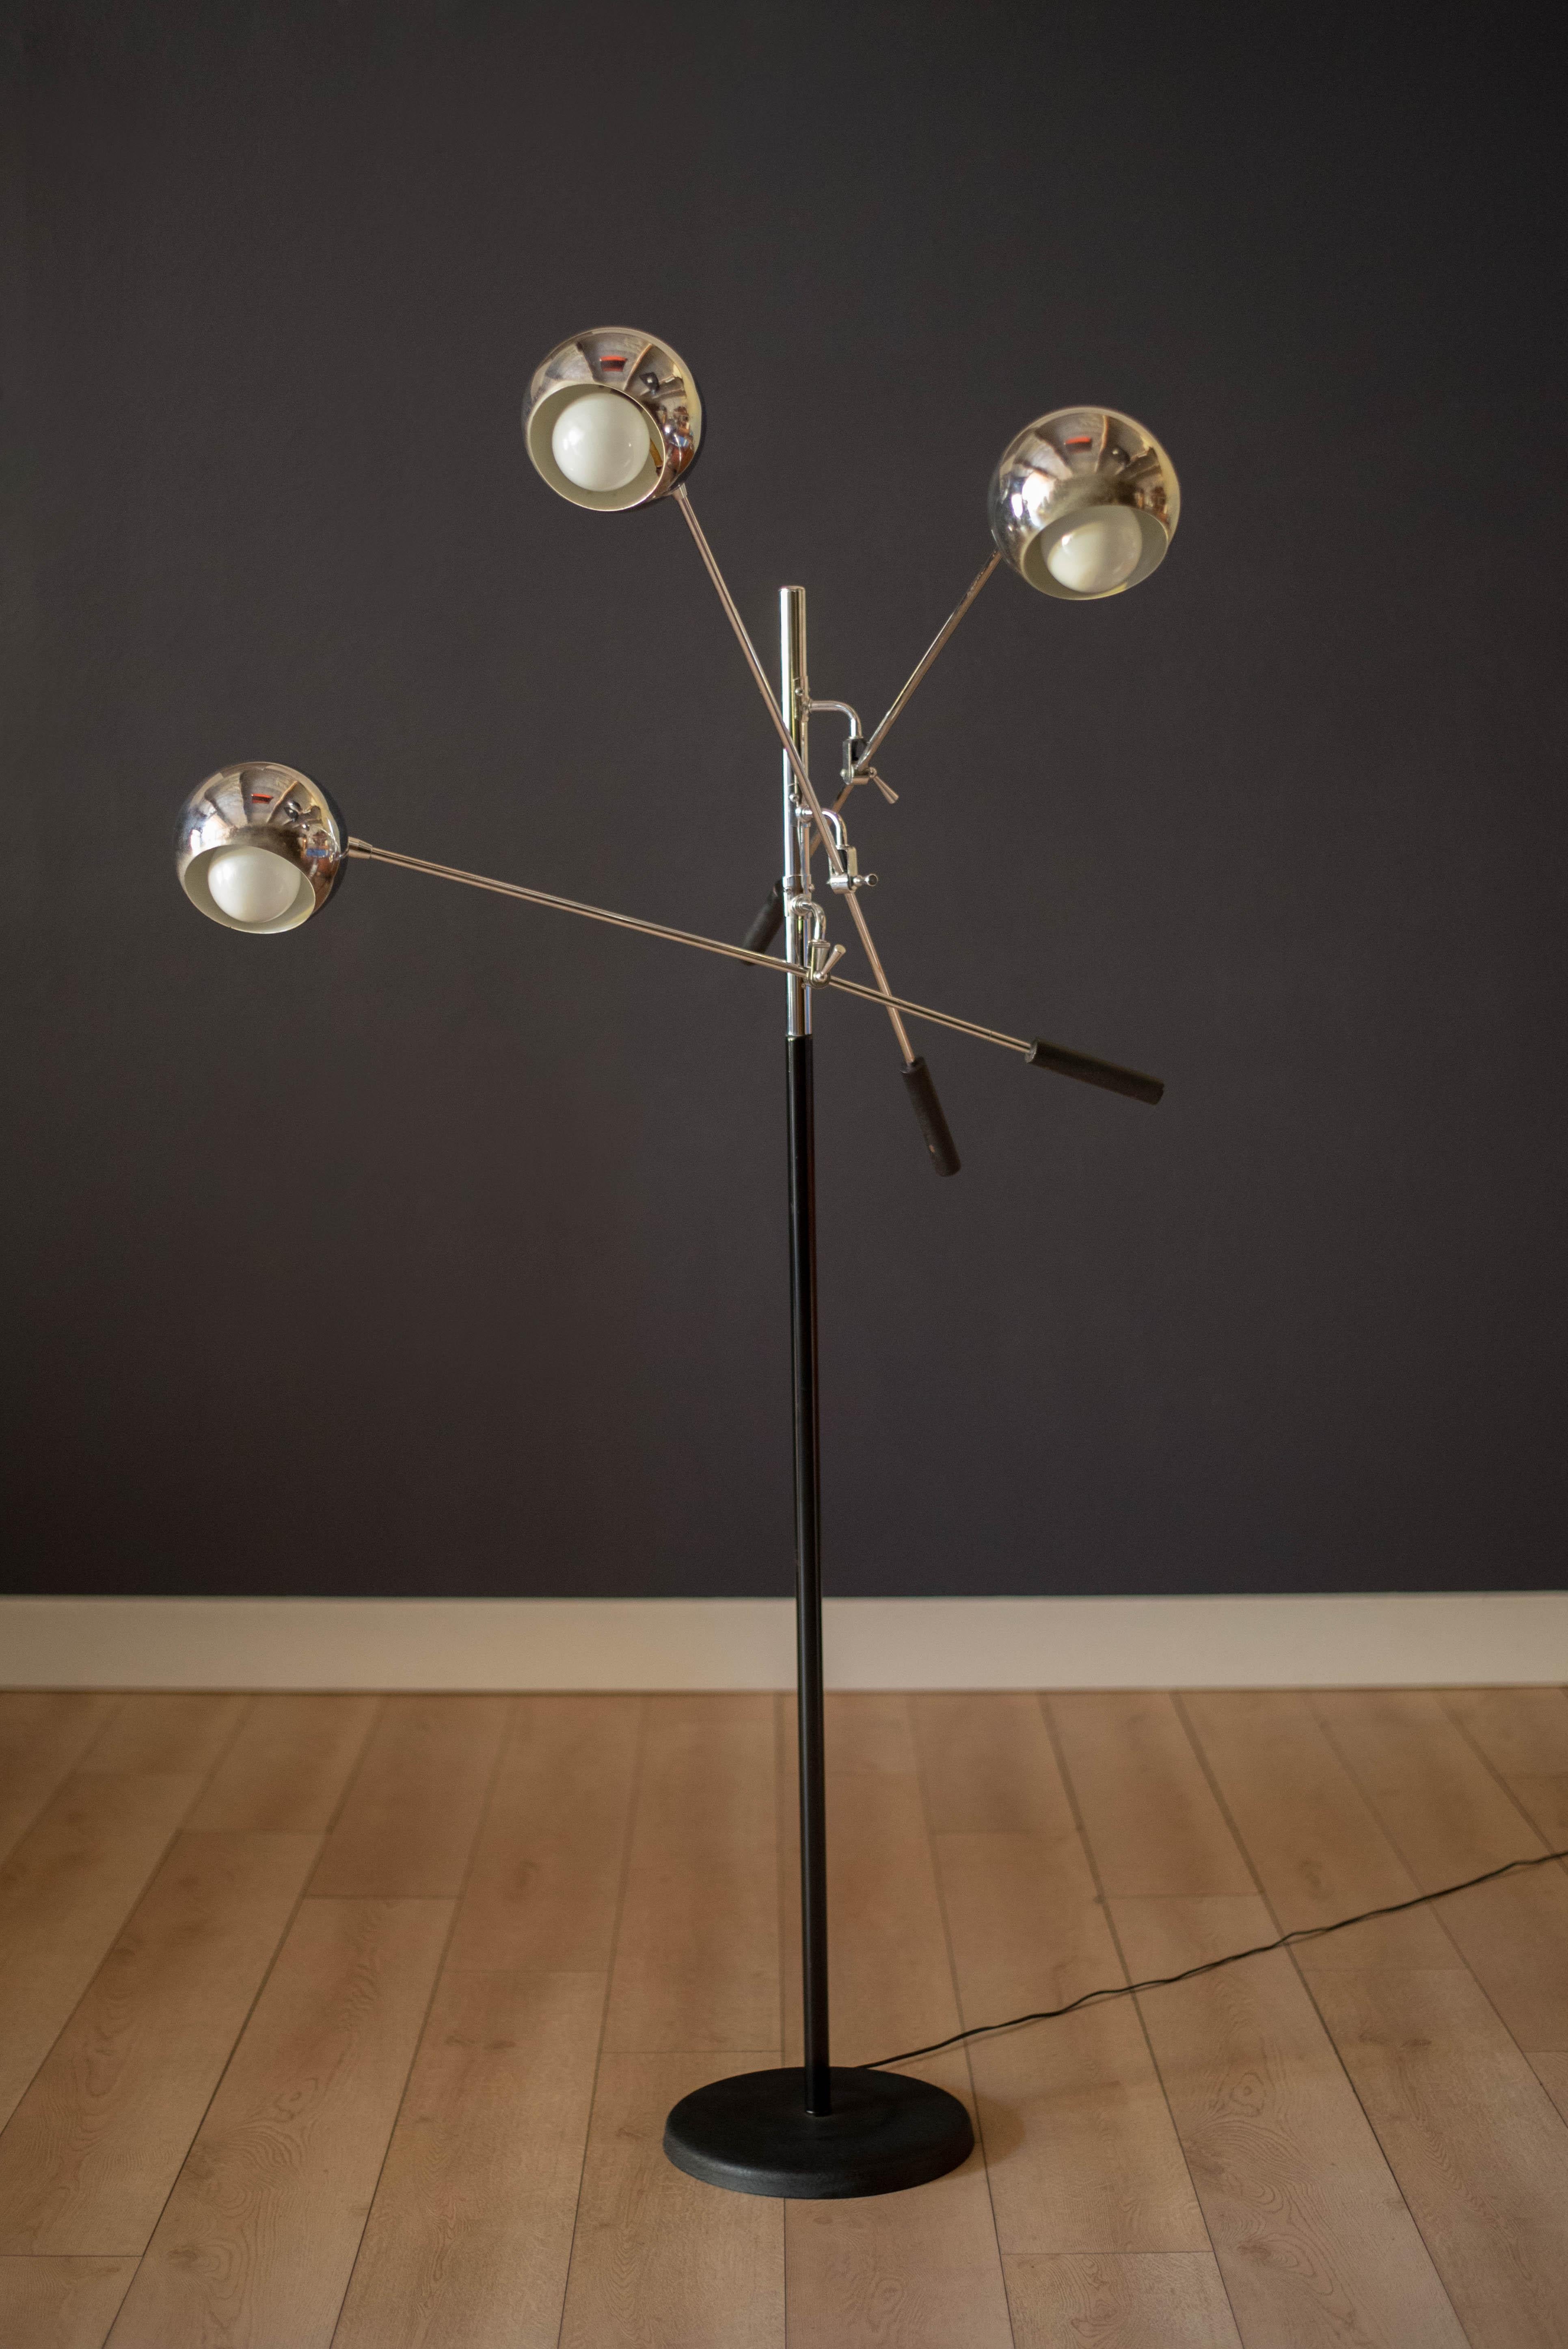 Lampadaire Triennale vintage conçu par Robert Sonneman dans les années 1970. Cette pièce polyvalente comporte trois têtes de lumière orbitale chromées réglables qui pivotent sur des bras de levier équilibrés. Les ampoules Globe ne sont pas incluses.